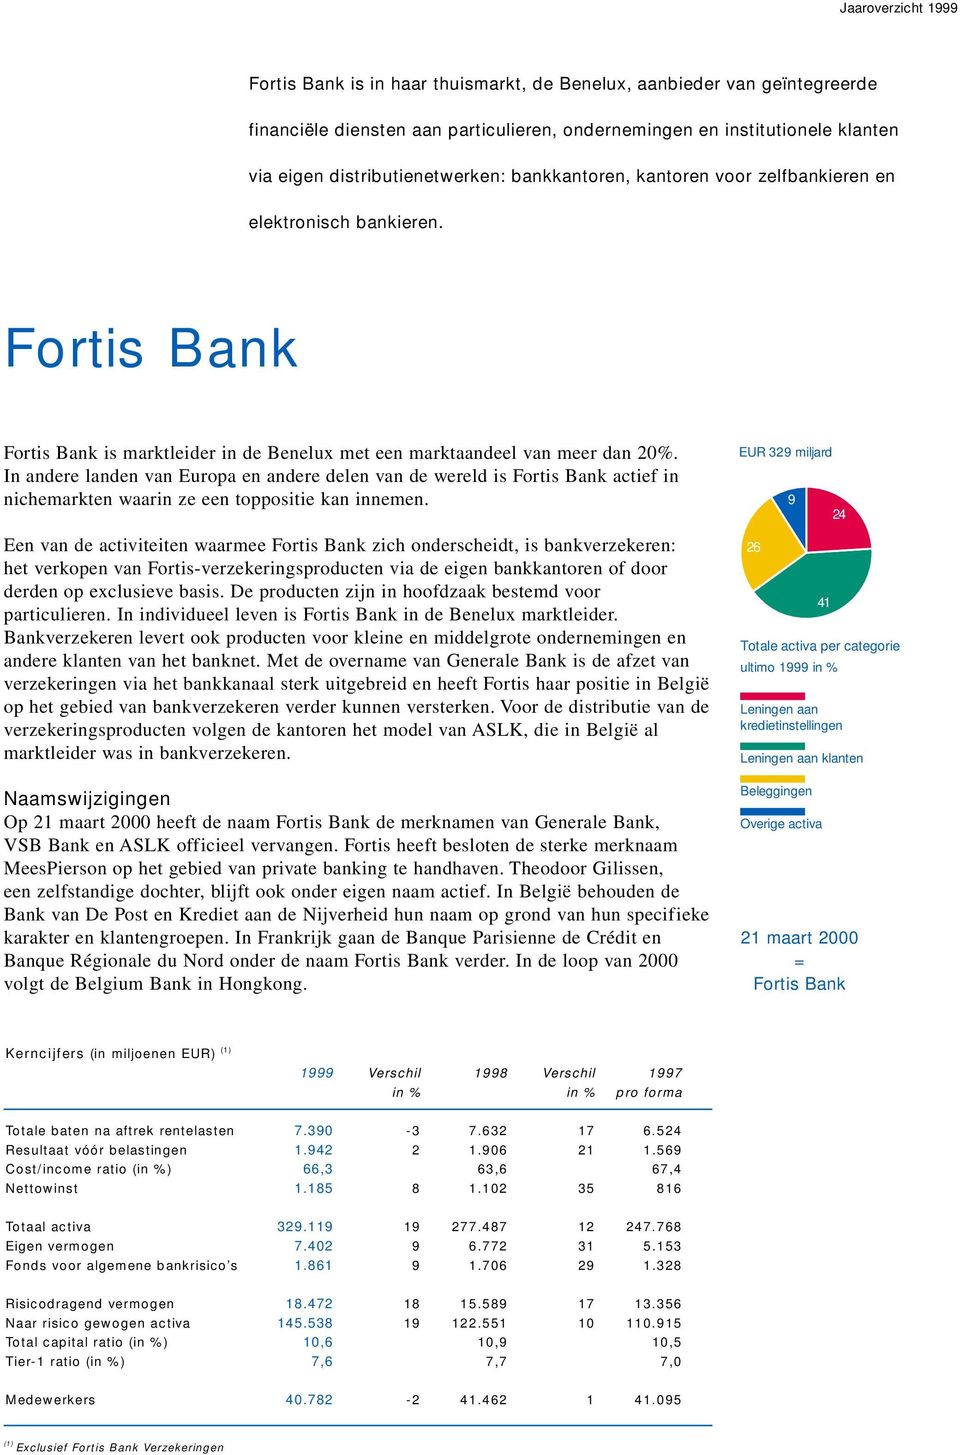 In andere landen van Europa en andere delen van de wereld is Fortis Bank actief in nichemarkten waarin ze een toppositie kan innemen.